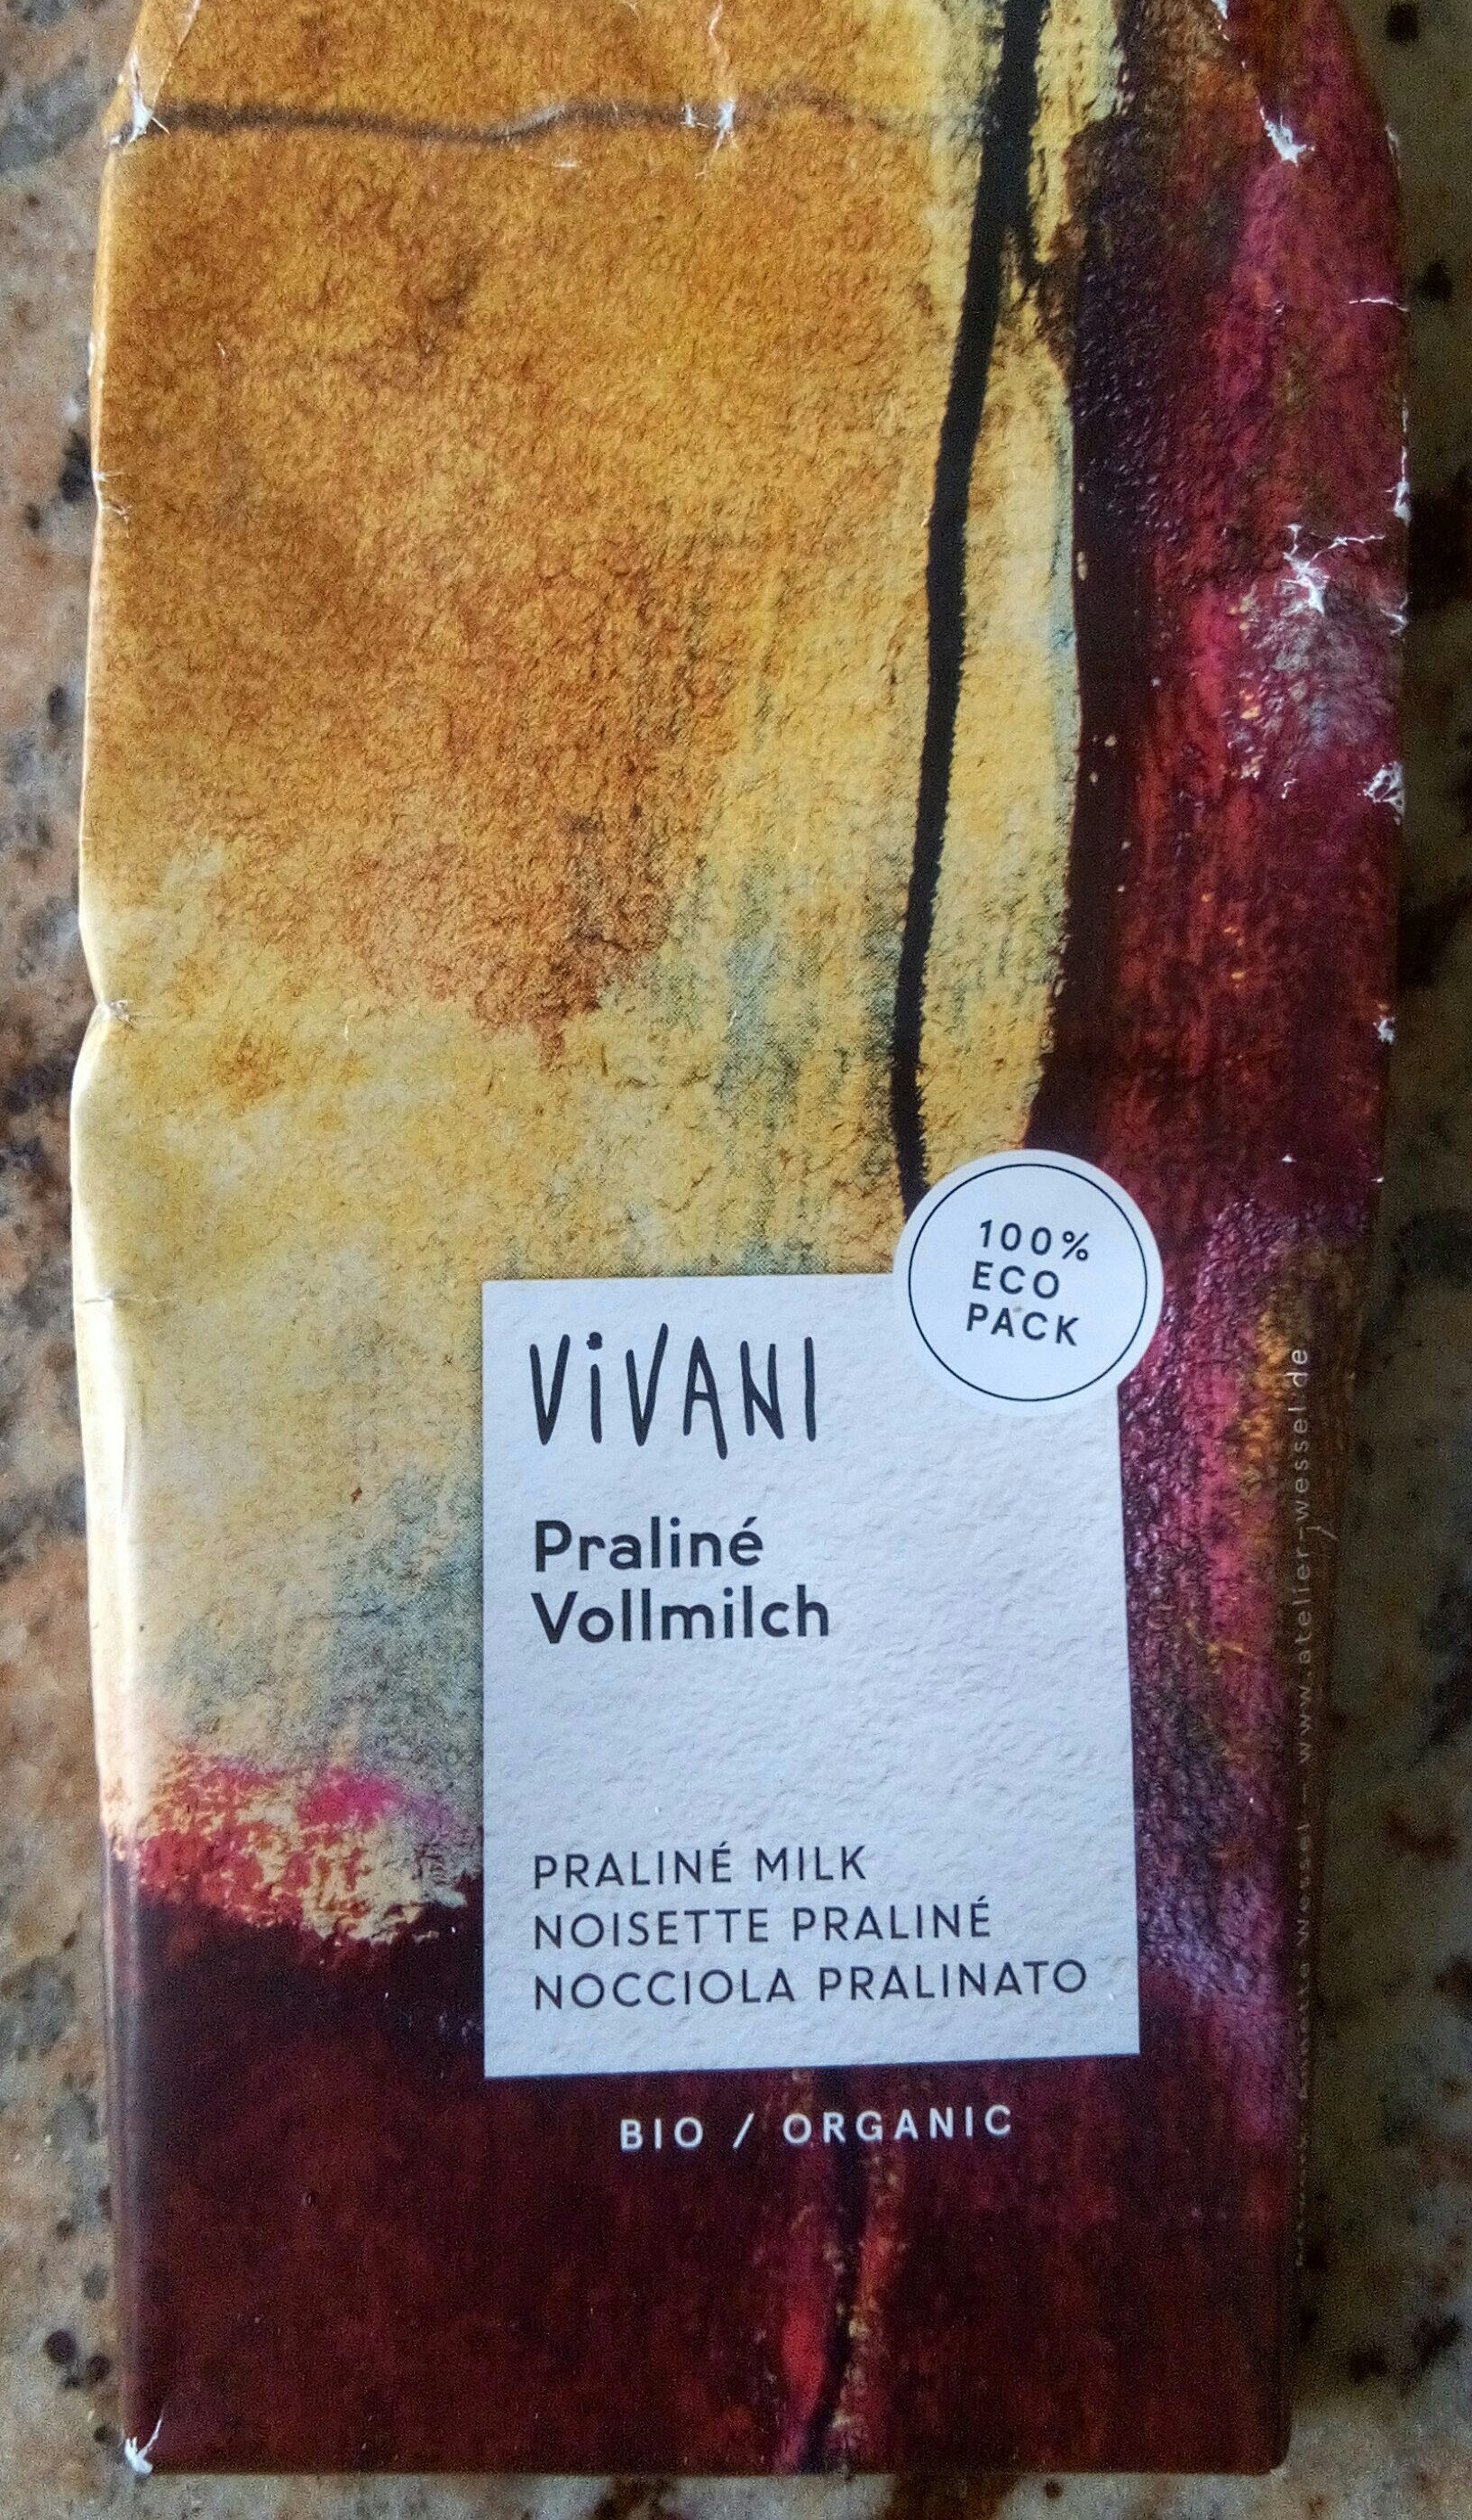 Praliné Vollmilch - Product - fr